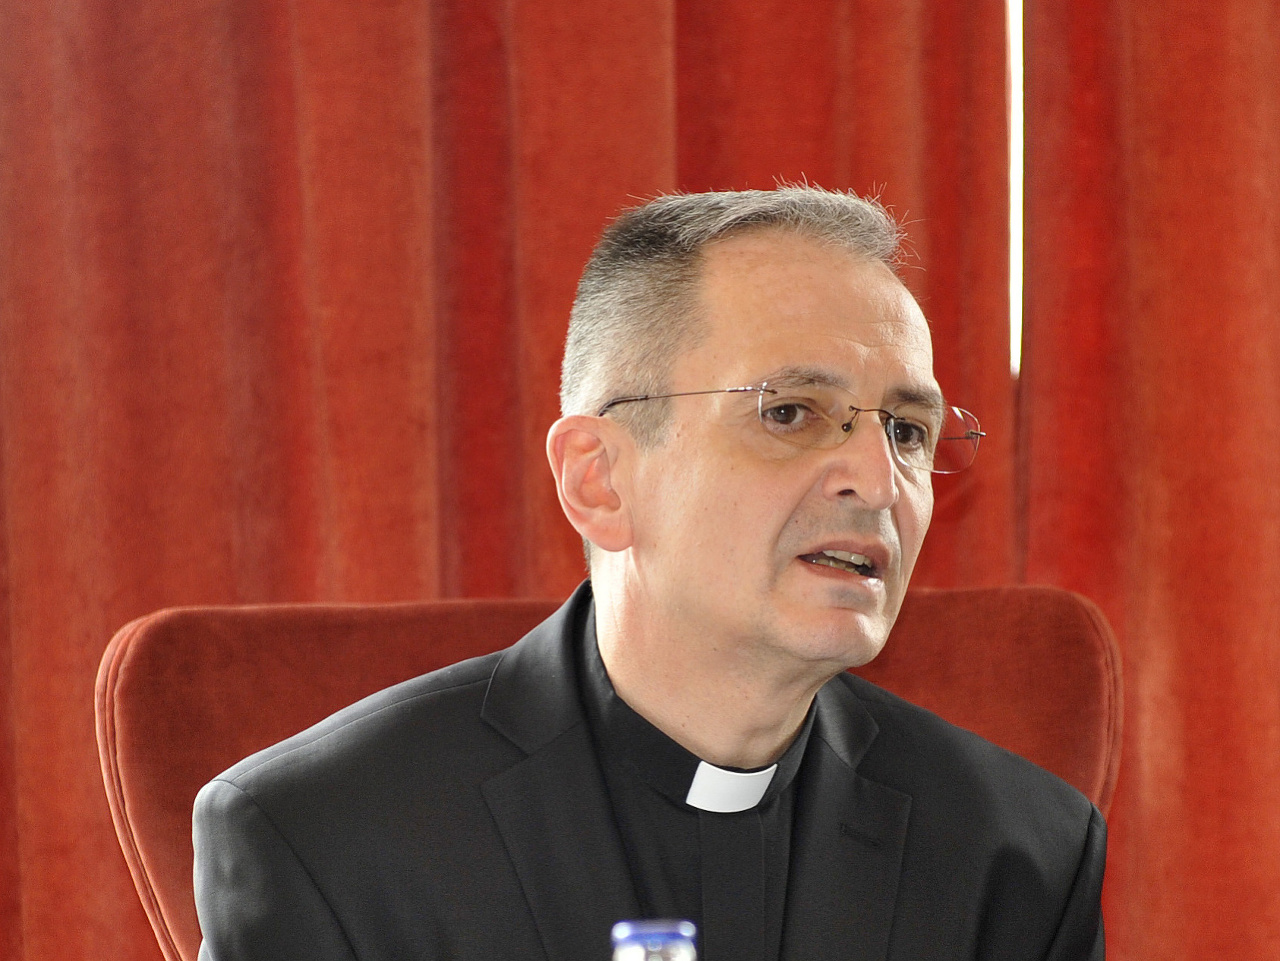 Predseda Konferencie biskupov Slovenska Stanislav Zvolenský